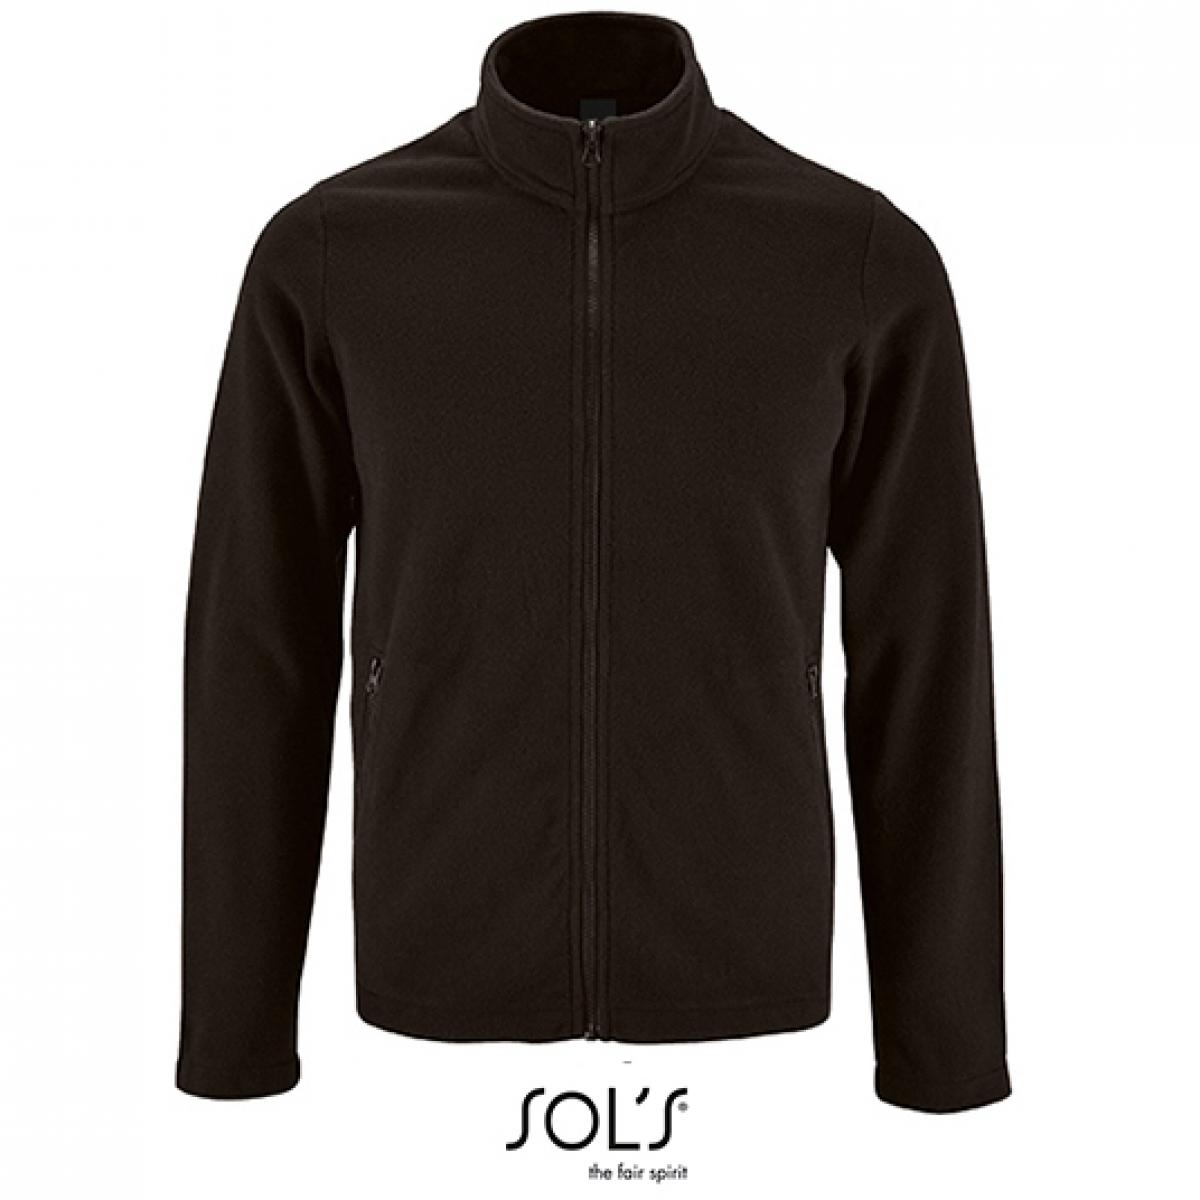 Hersteller: SOLs Herstellernummer: 02093 Artikelbezeichnung: Herren Plain Fleece Jacket Norman Farbe: Black